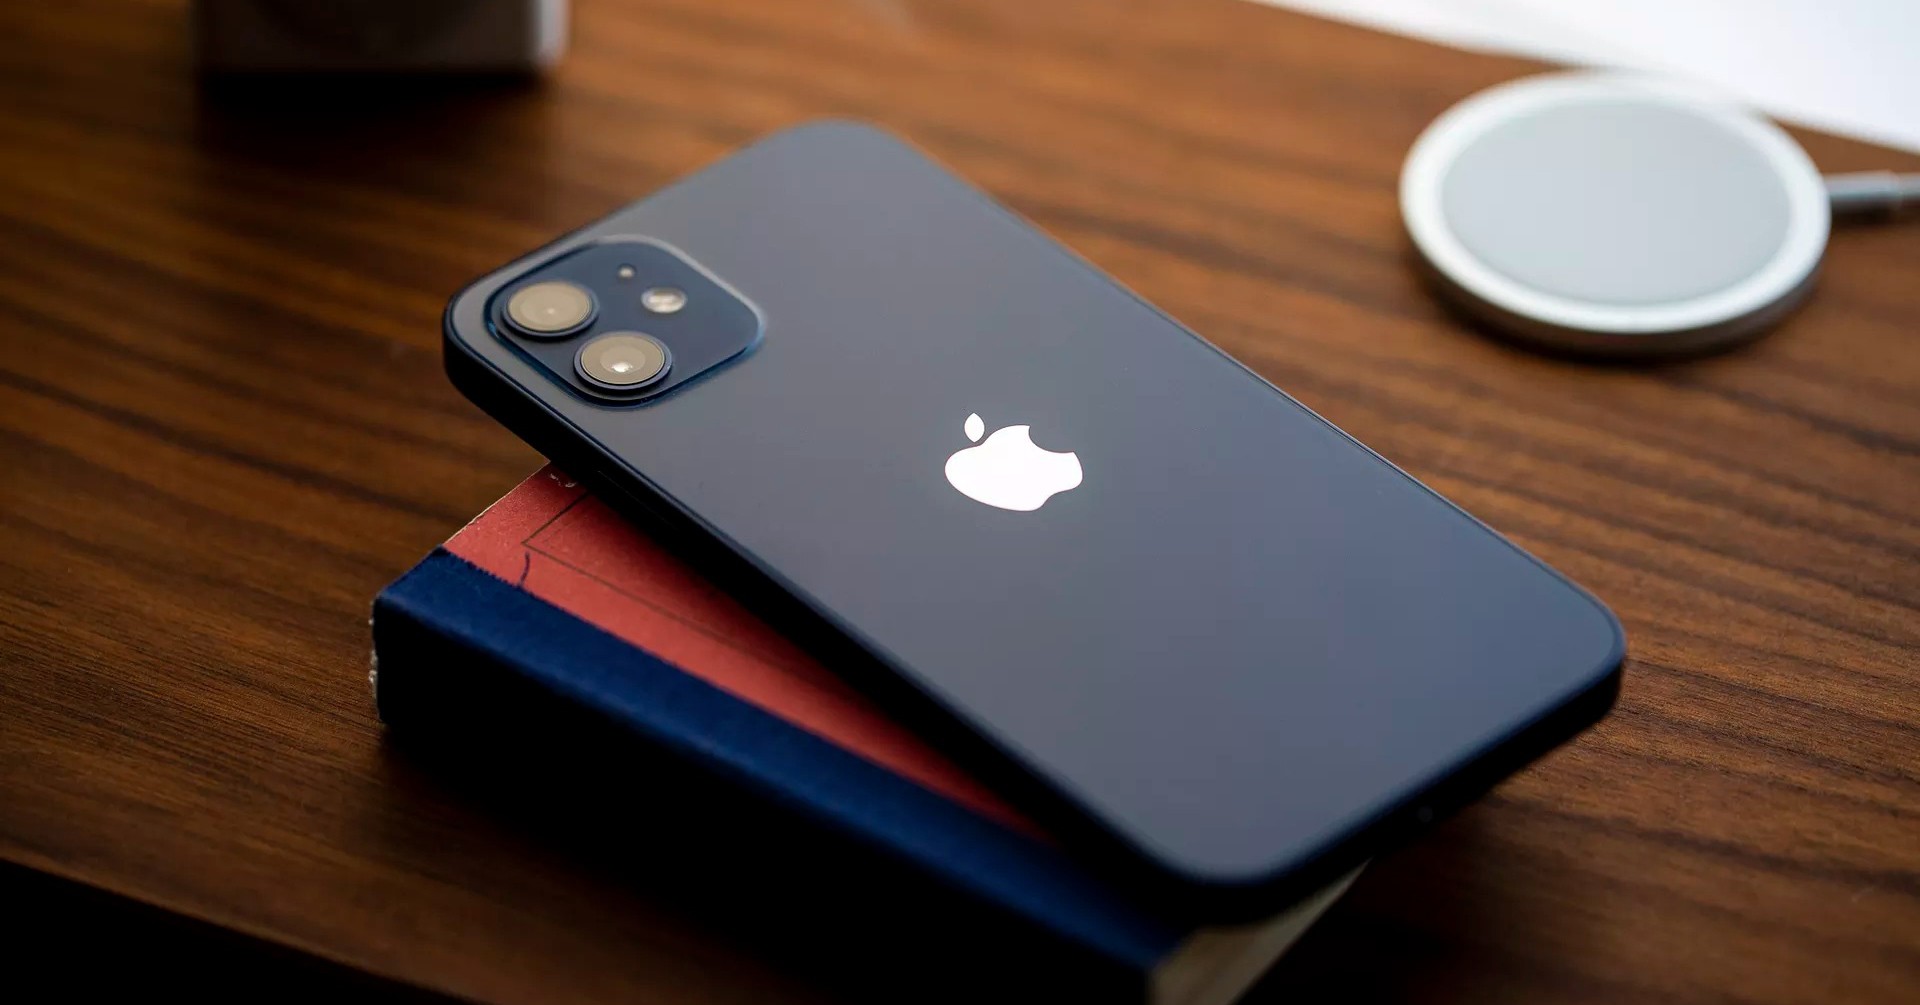 Chia sẻ với anh em bộ hình nền mặc định của iPhone 12 mới ra mắt